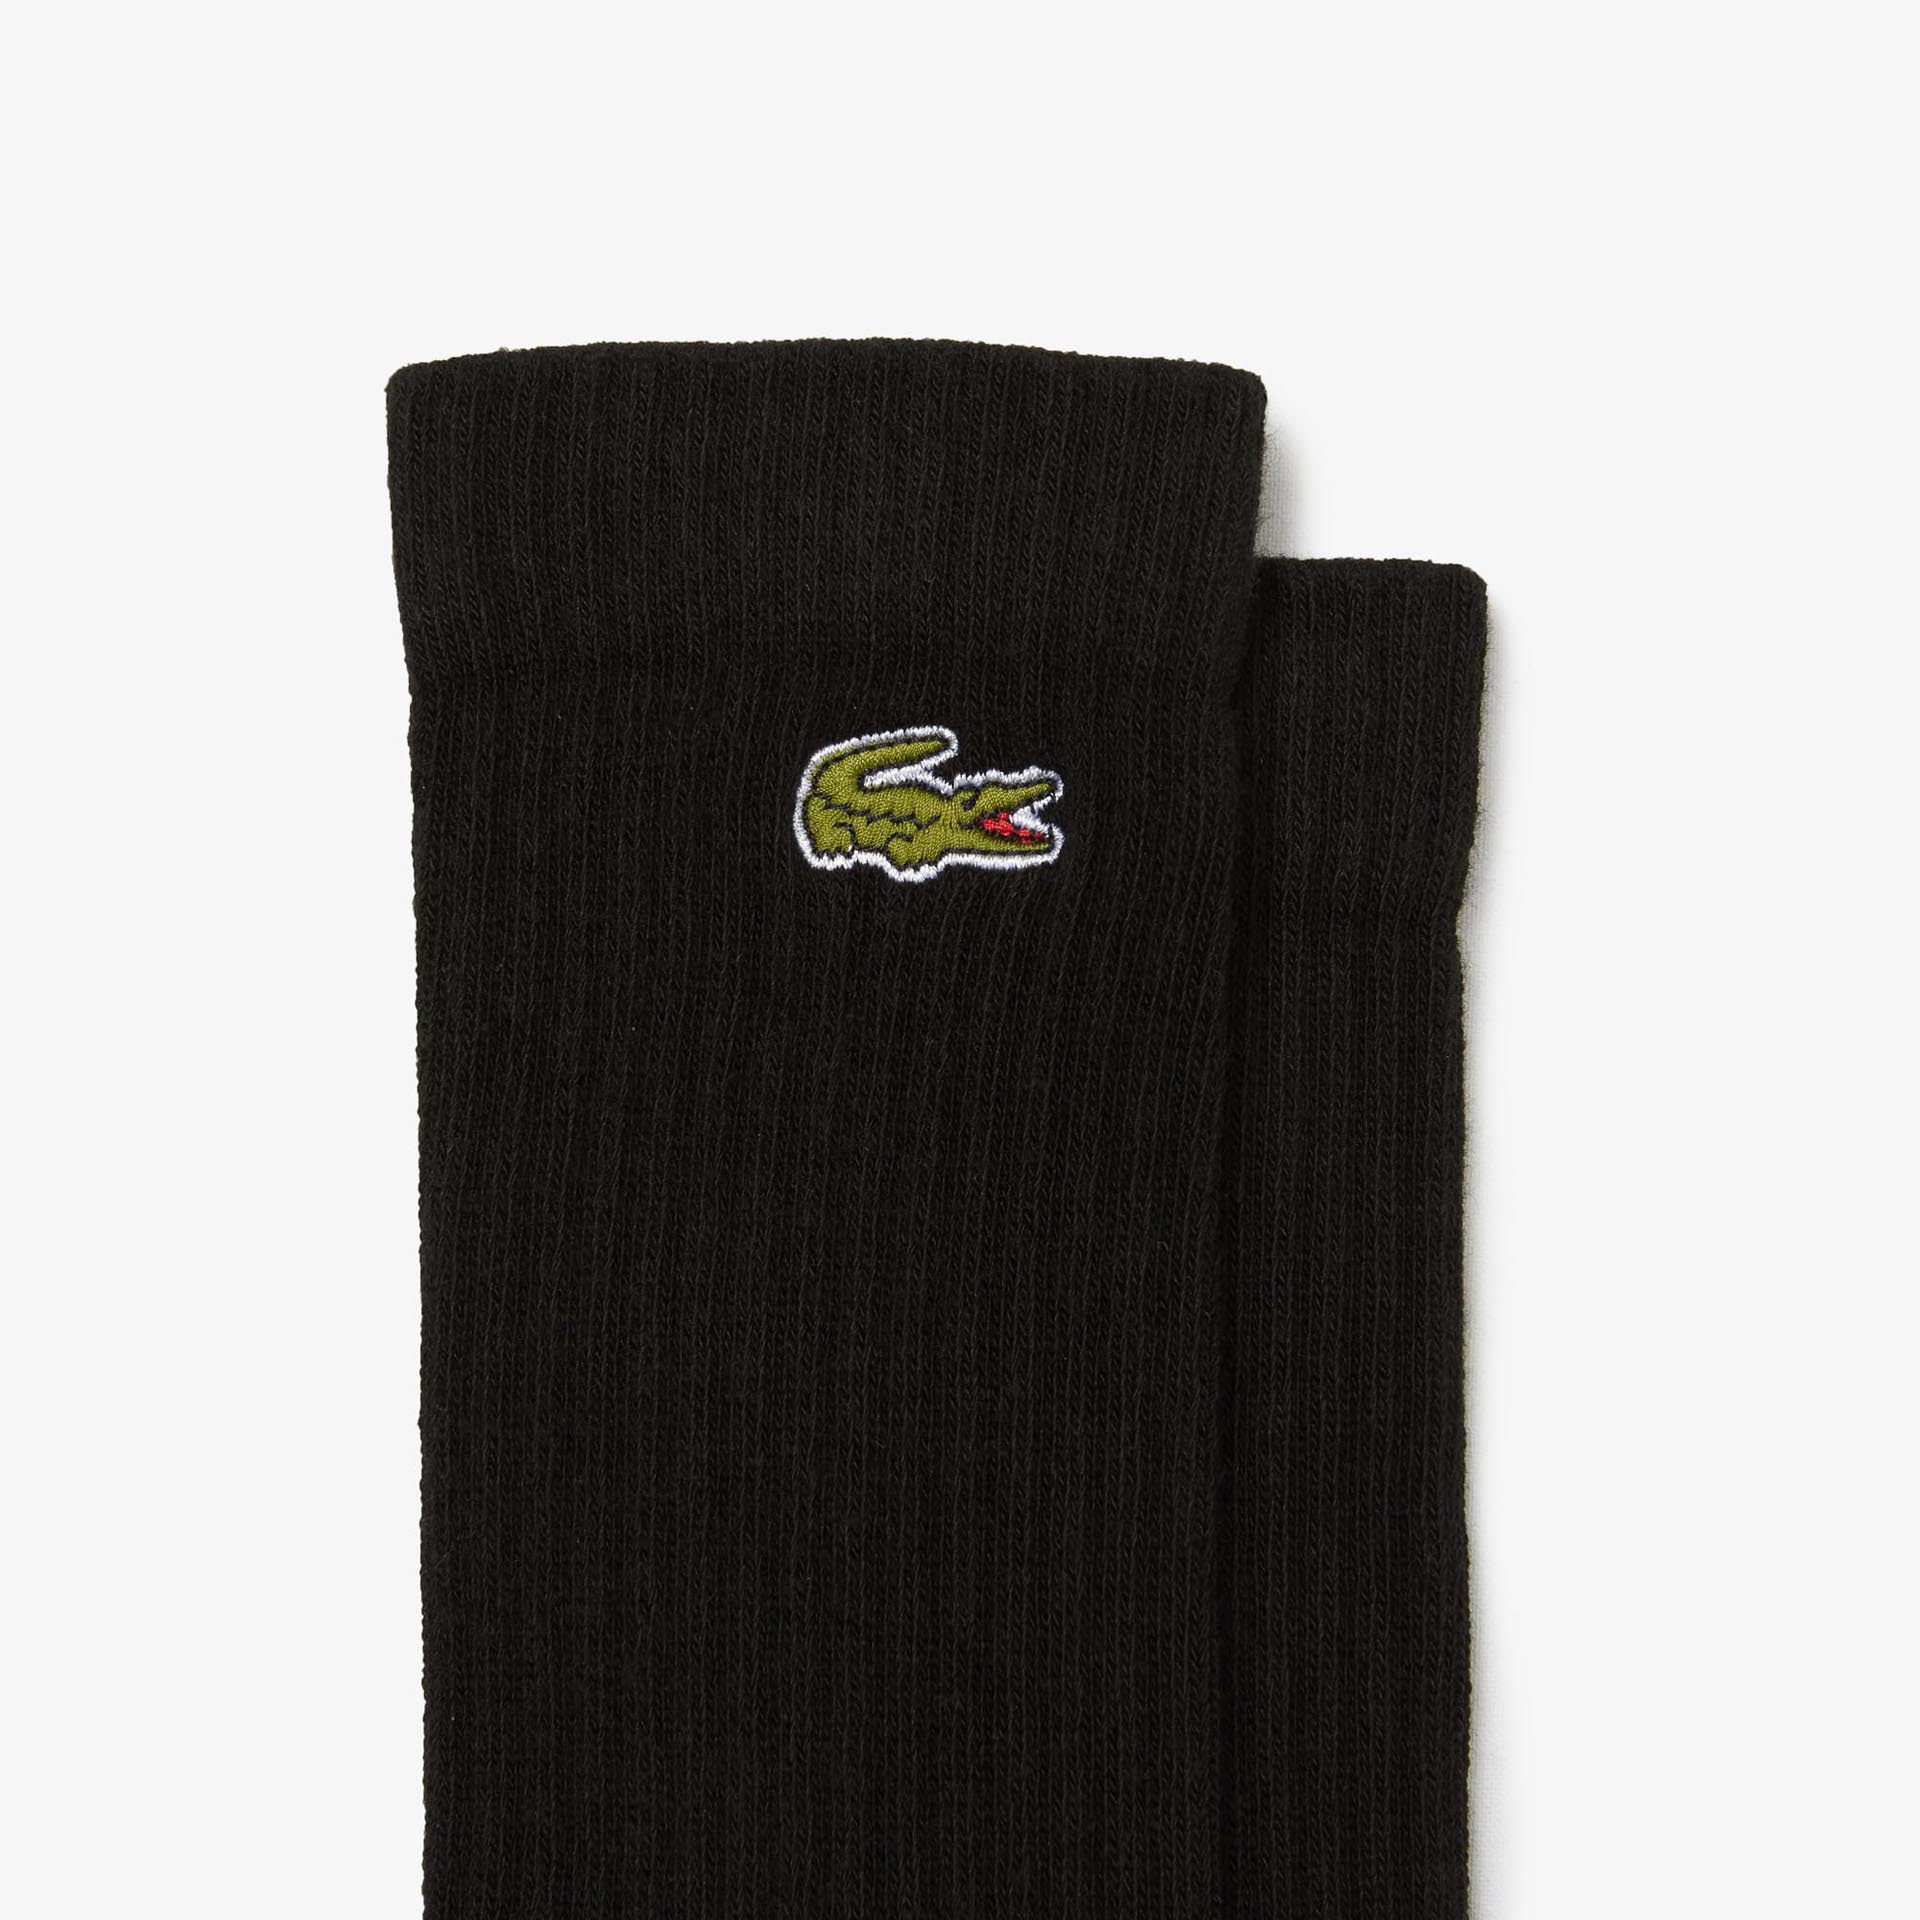 Lacoste Crew Socks Black/Black/Black